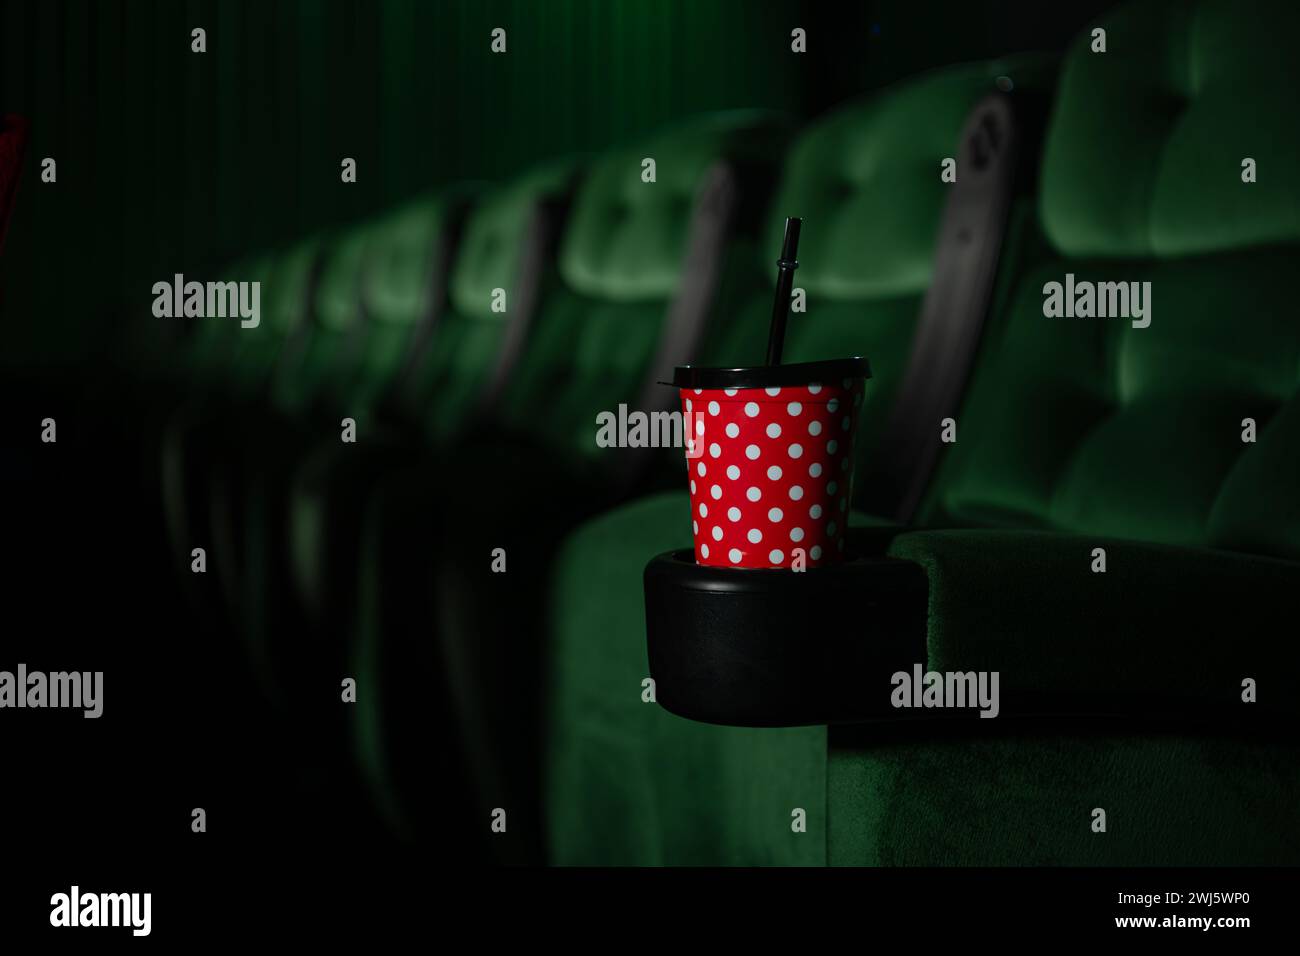 Kino-Auditorium mit grünen Sitzen und einem roten Getränk Stockfoto